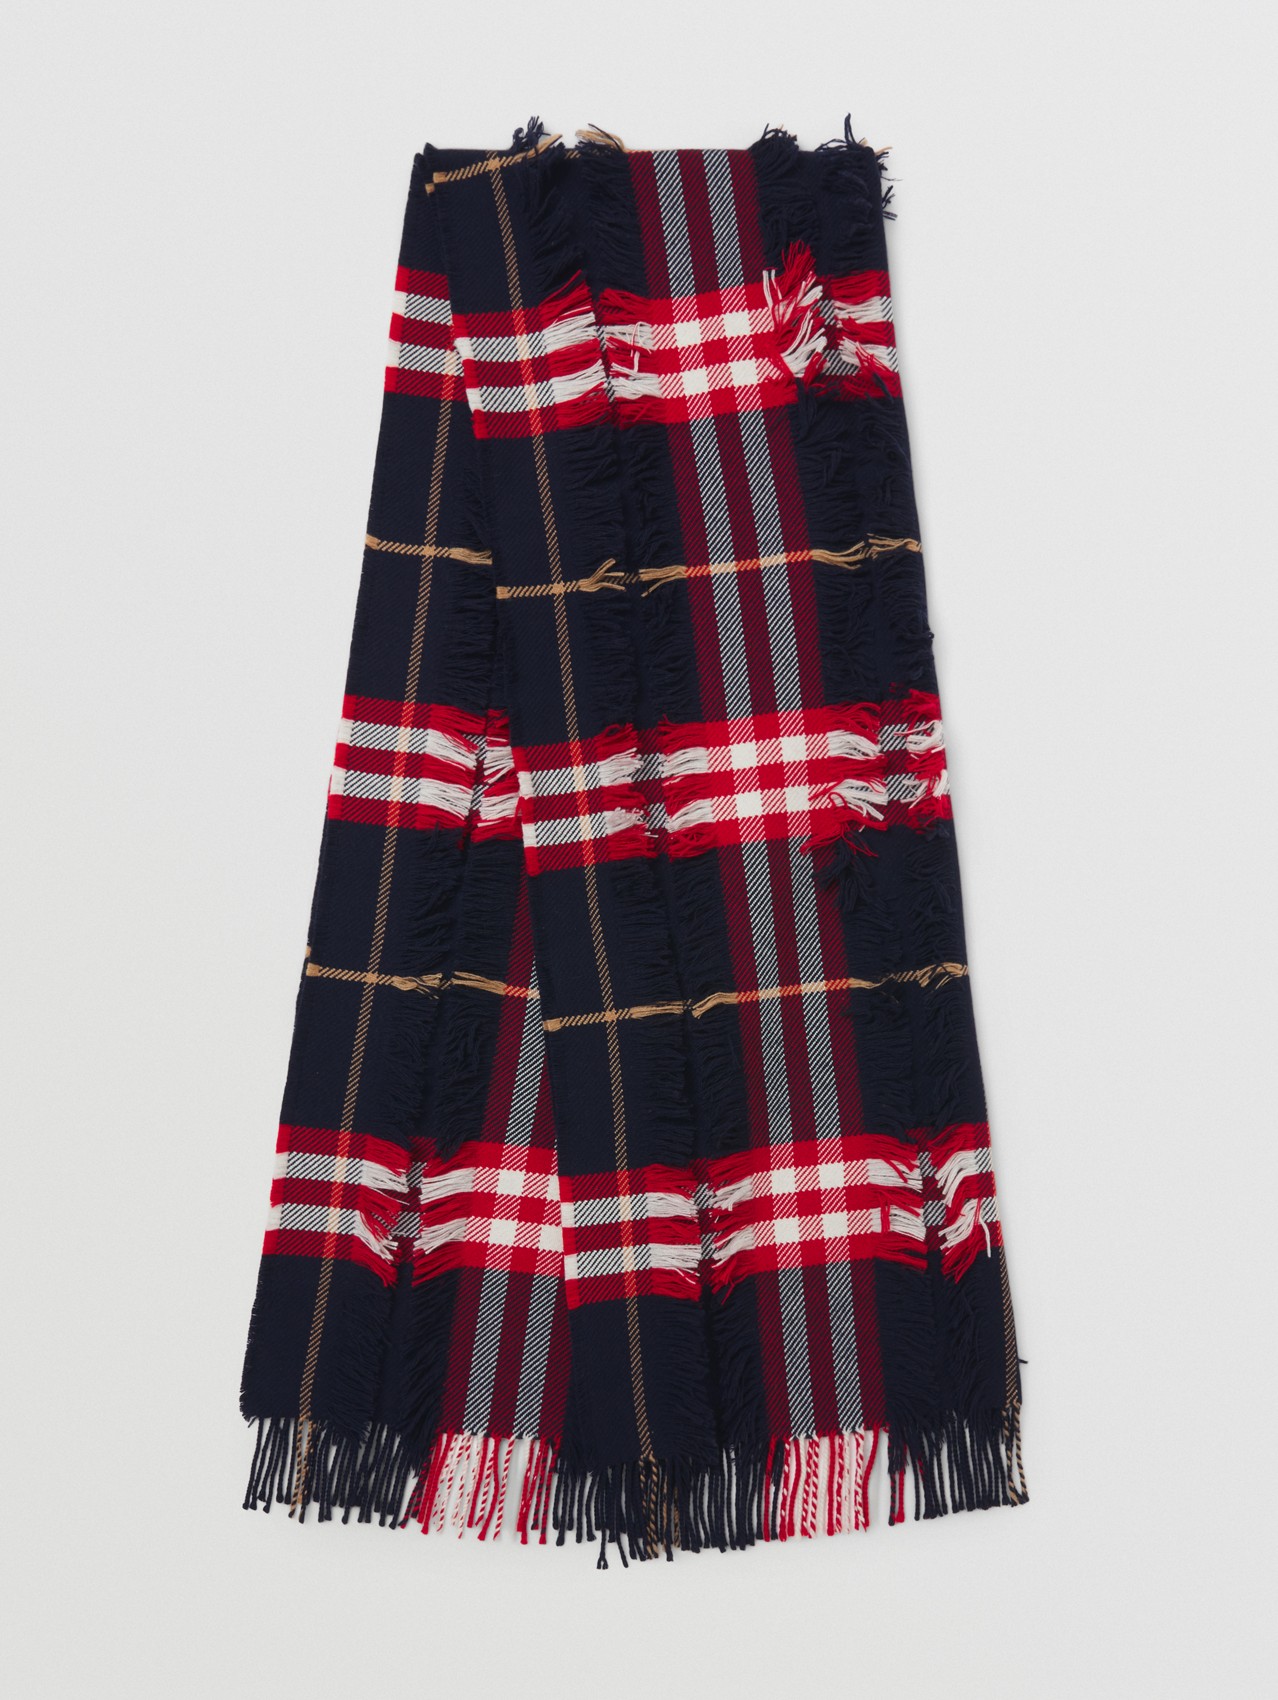 Sciarpa in fil coupé misto cashmere e lana con motivo tartan (Navy/rosso)